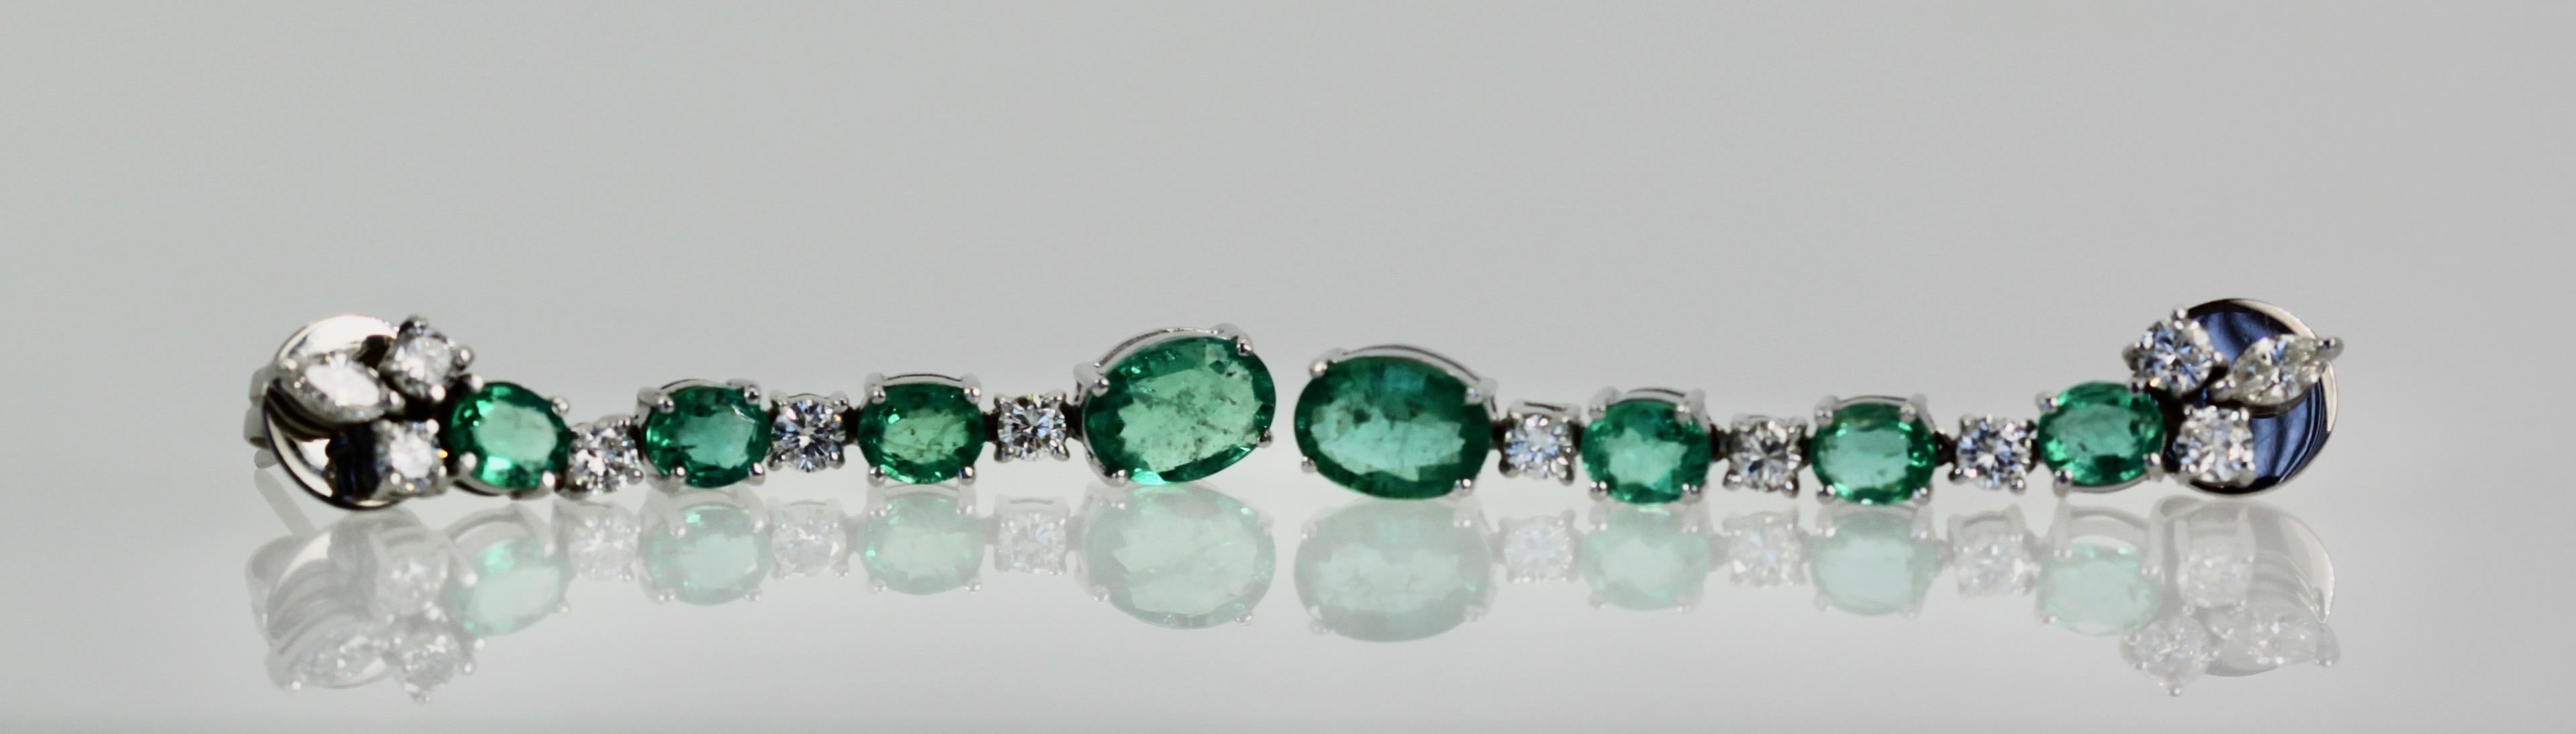 Emerald Drop Dangle Earrings 5 Carats 18K For Sale 2